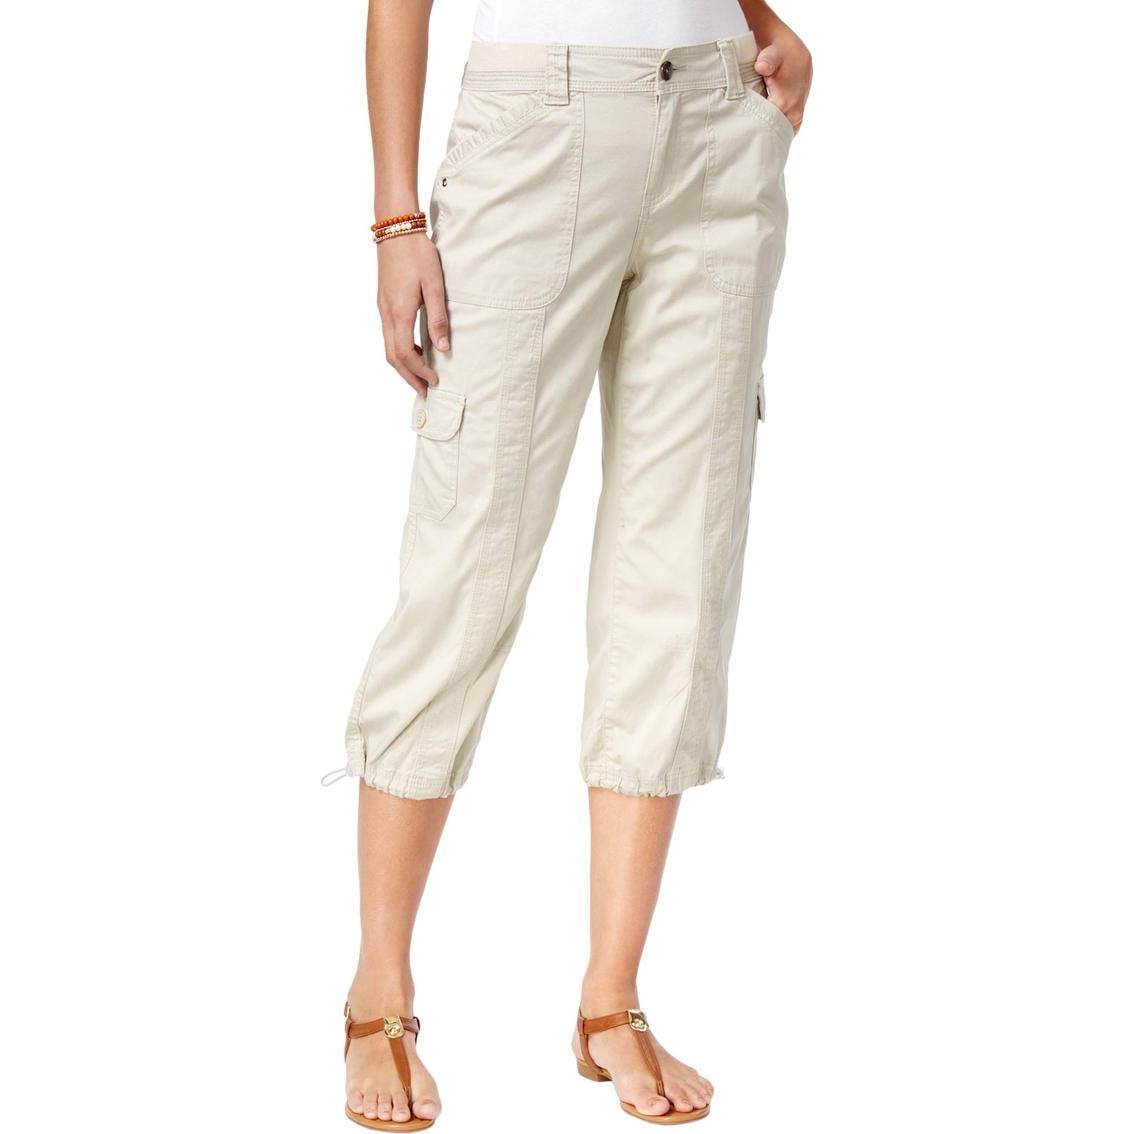 Style & Co Cargo Capri Pants | Pants & Capris | Clothing & Accessories ...